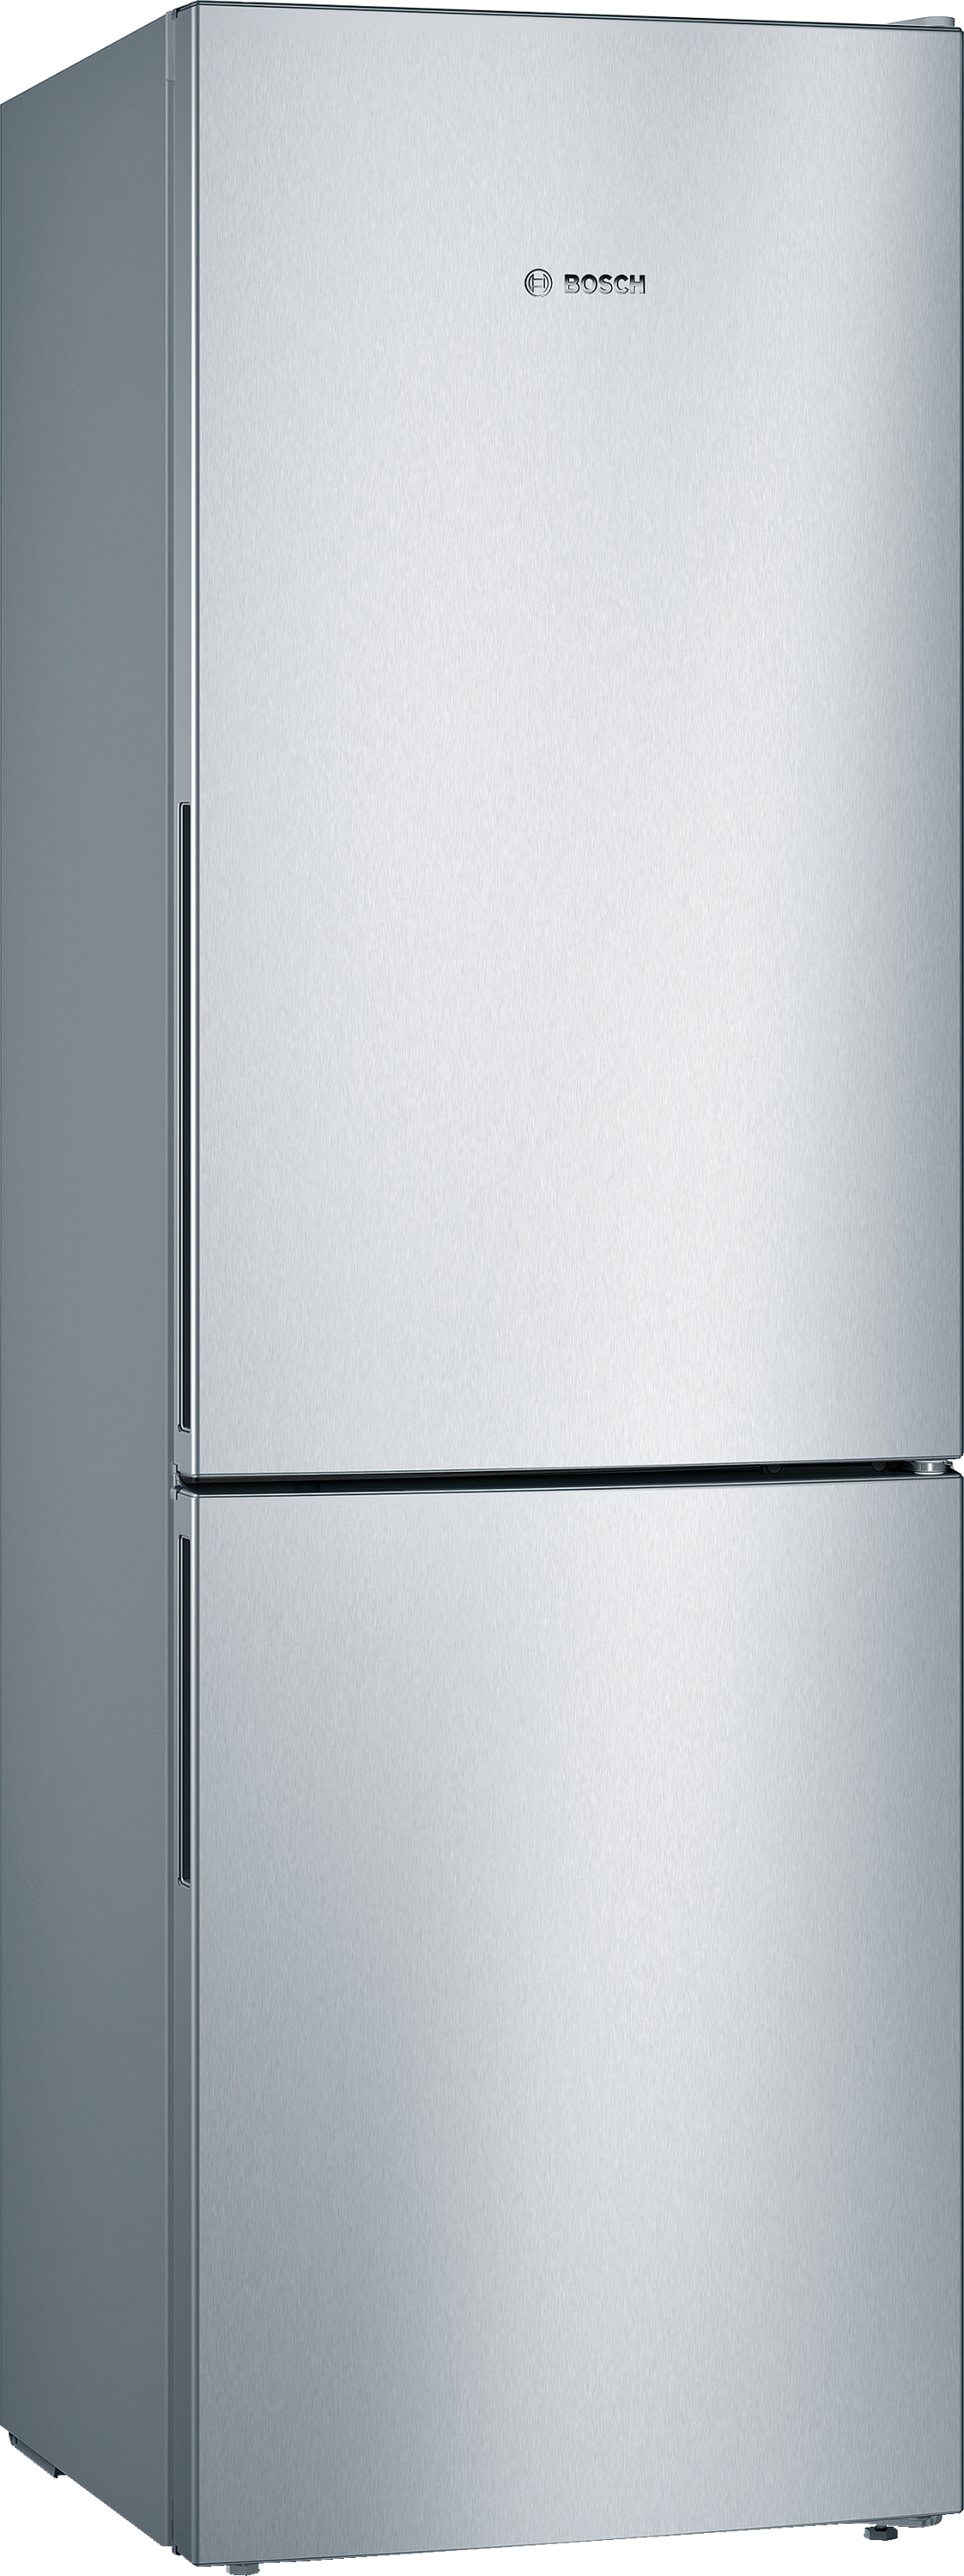 KGV36VLEAS Combină frigorifică independentă 5 ANI GARANTIE